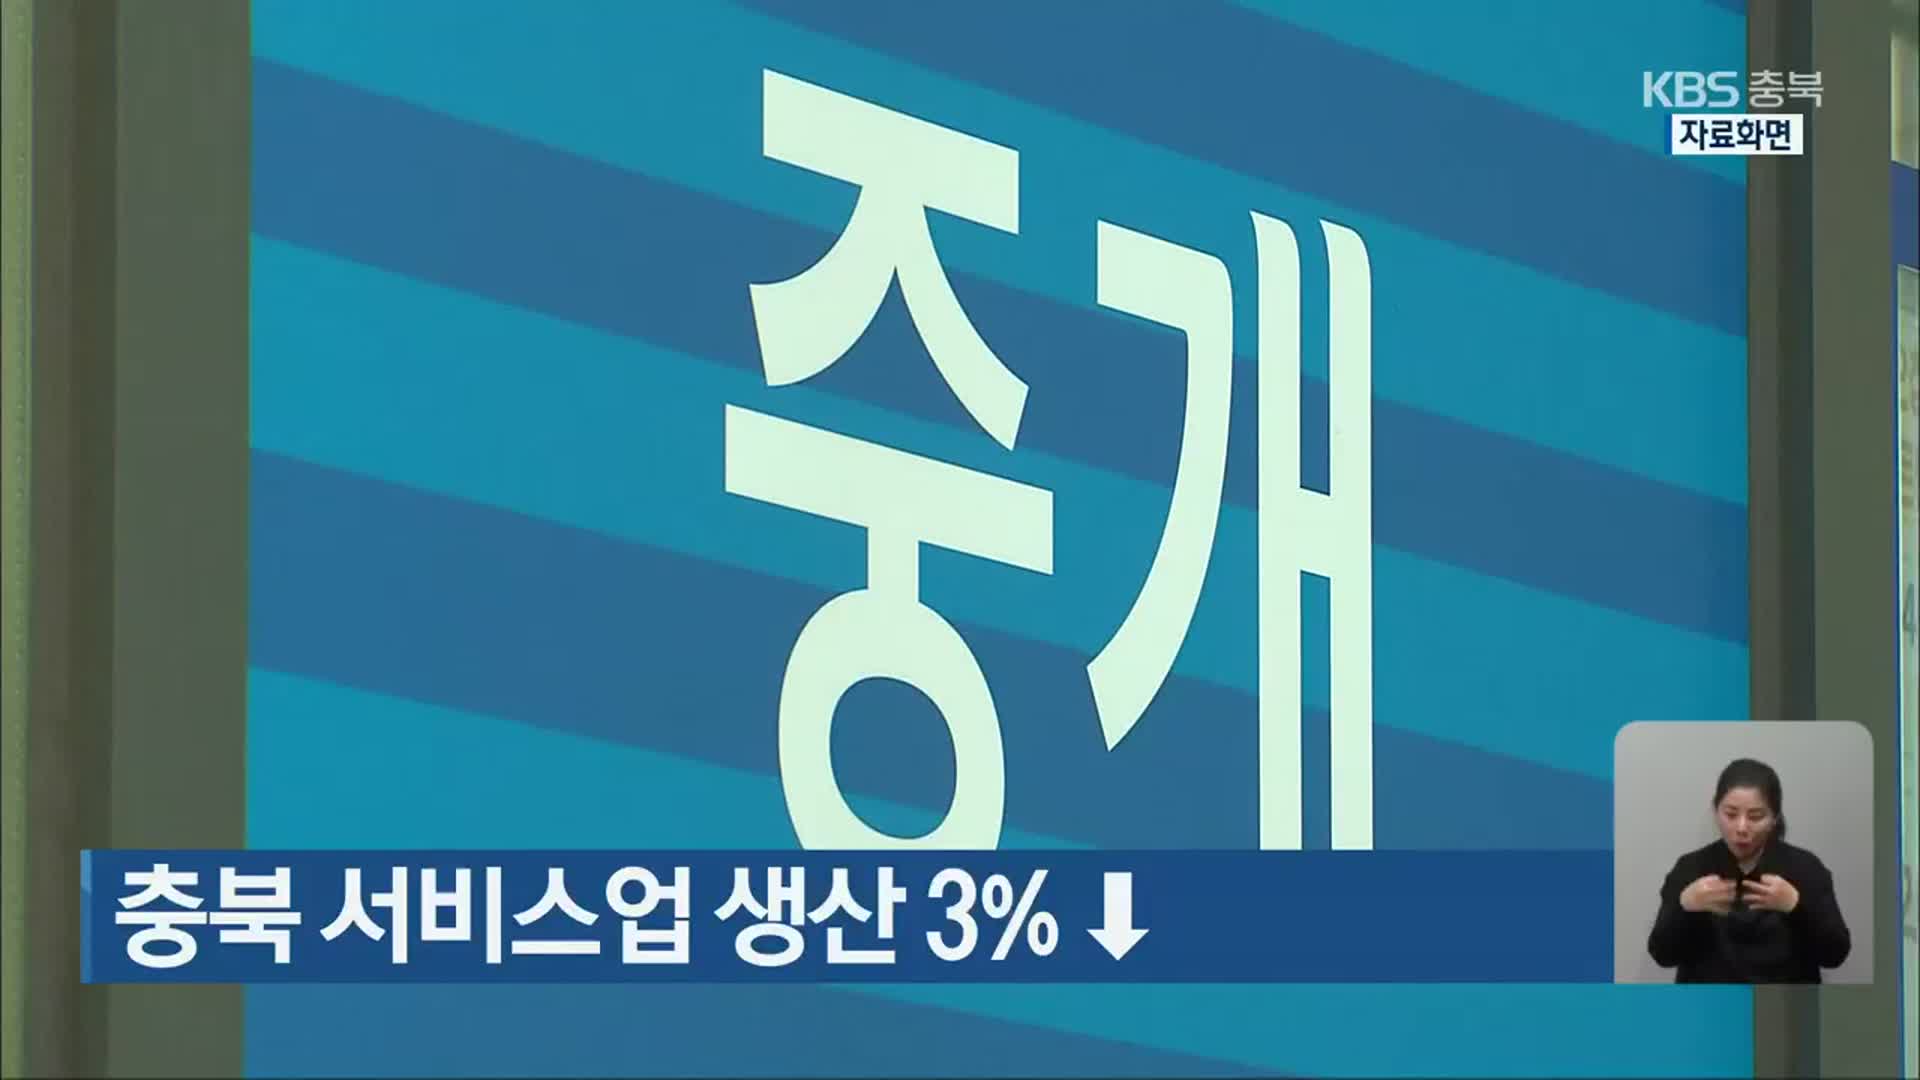 충북 서비스업 생산 3%↓